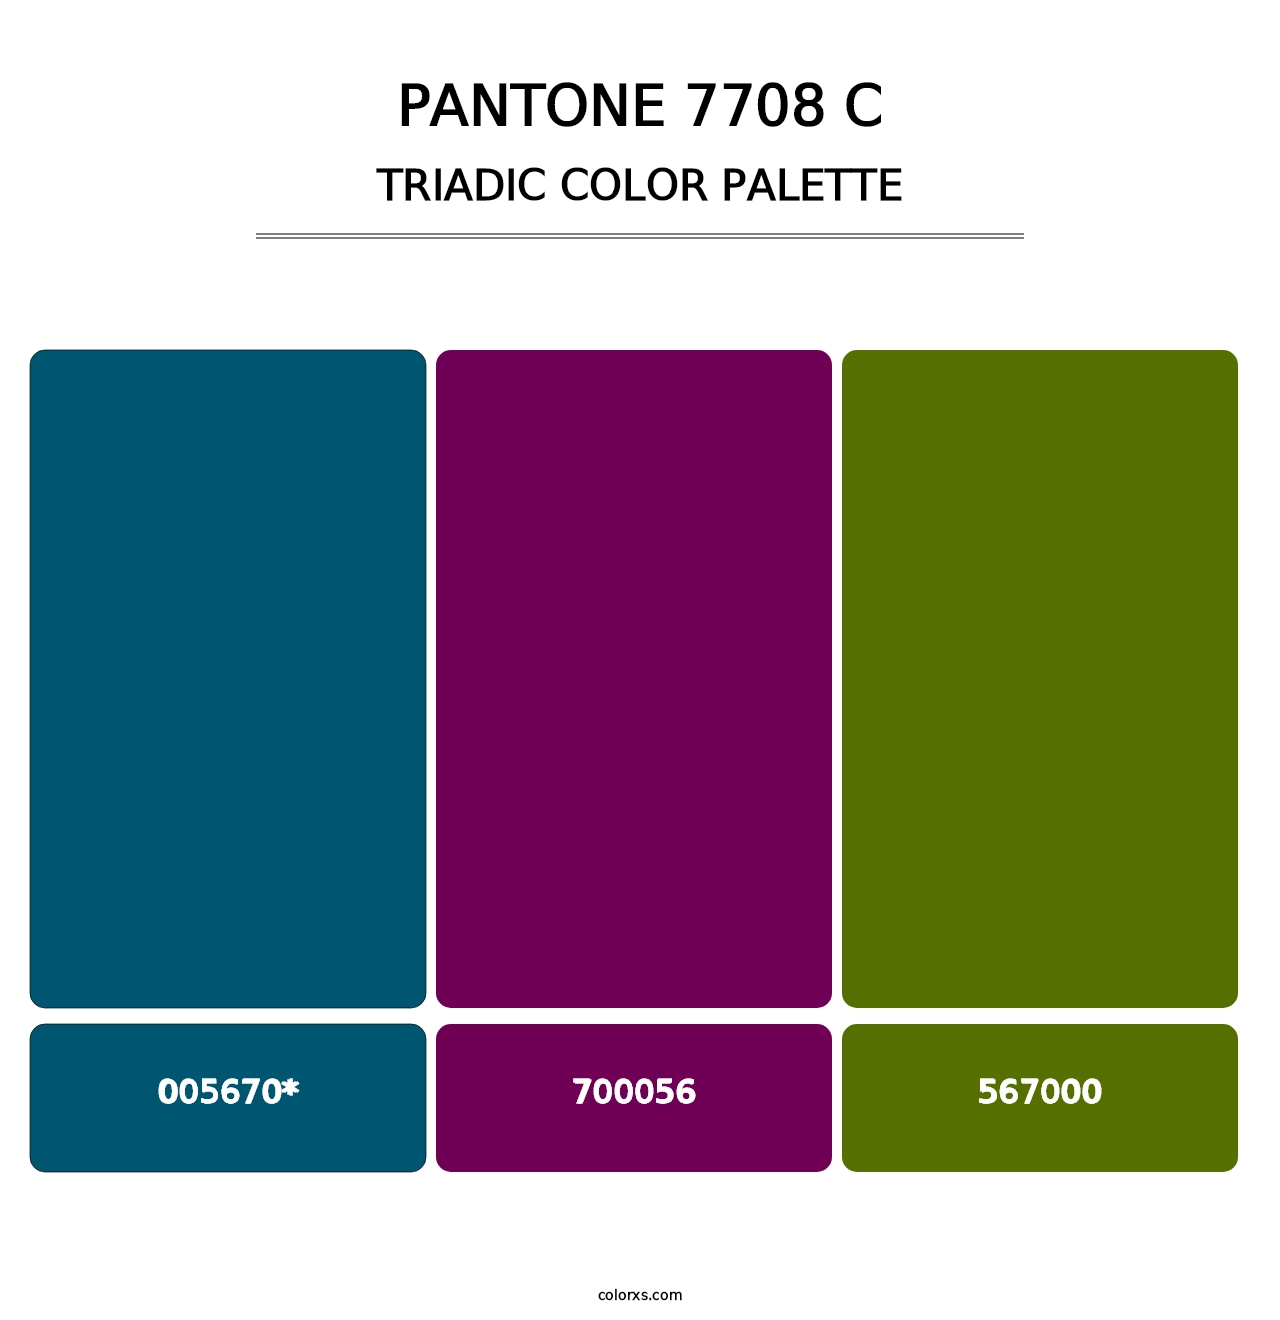 PANTONE 7708 C - Triadic Color Palette